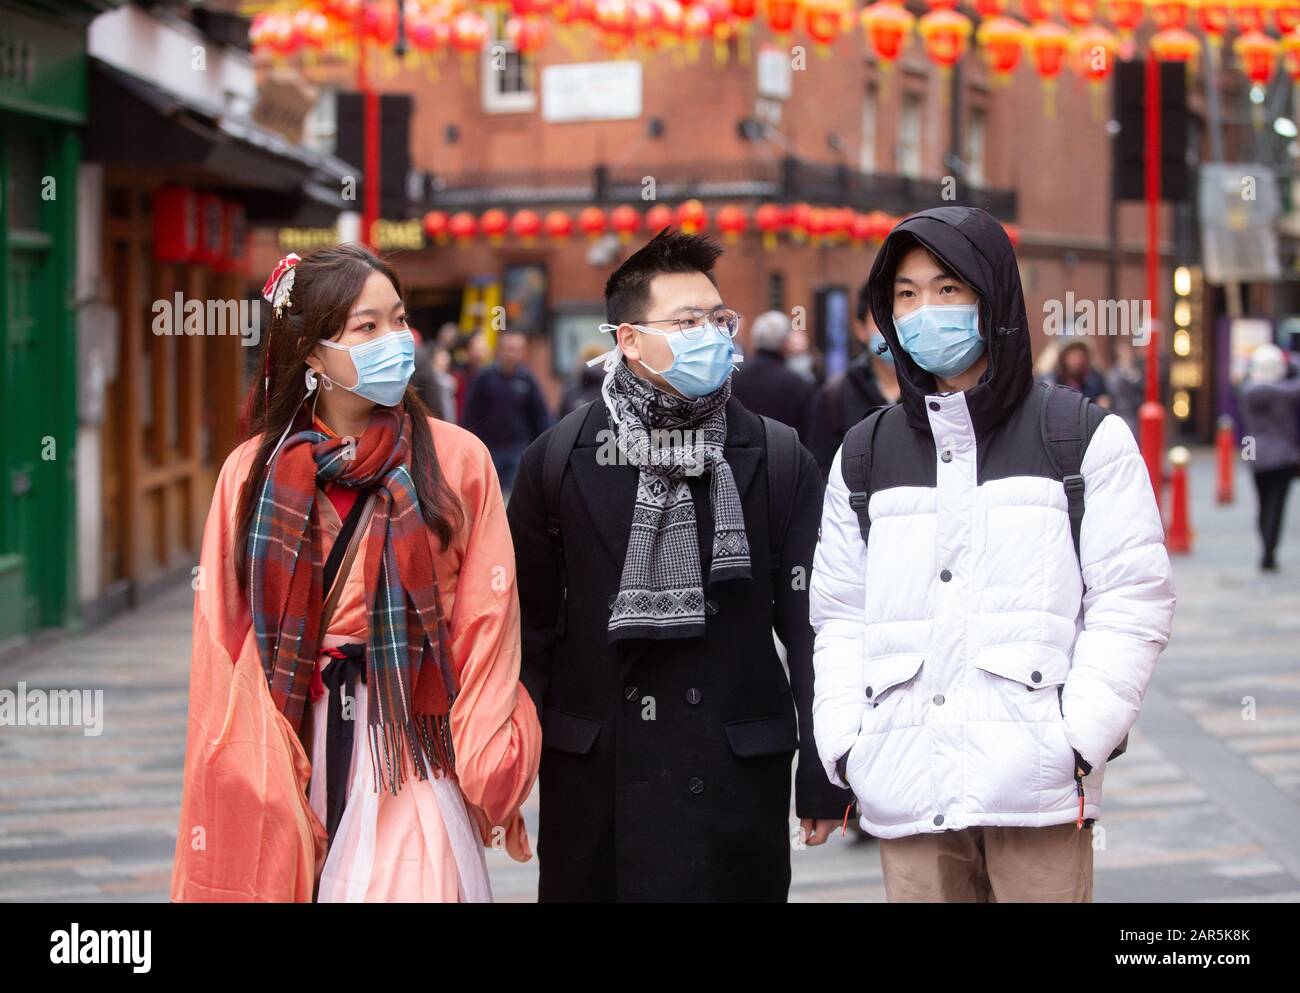 Le persone che indossano maschere facciali a Gerrard Street, Chinatown, celebrano il Capodanno cinese. C'è paura del Coronavirus che ha iniziato a Wuhan. Foto Stock